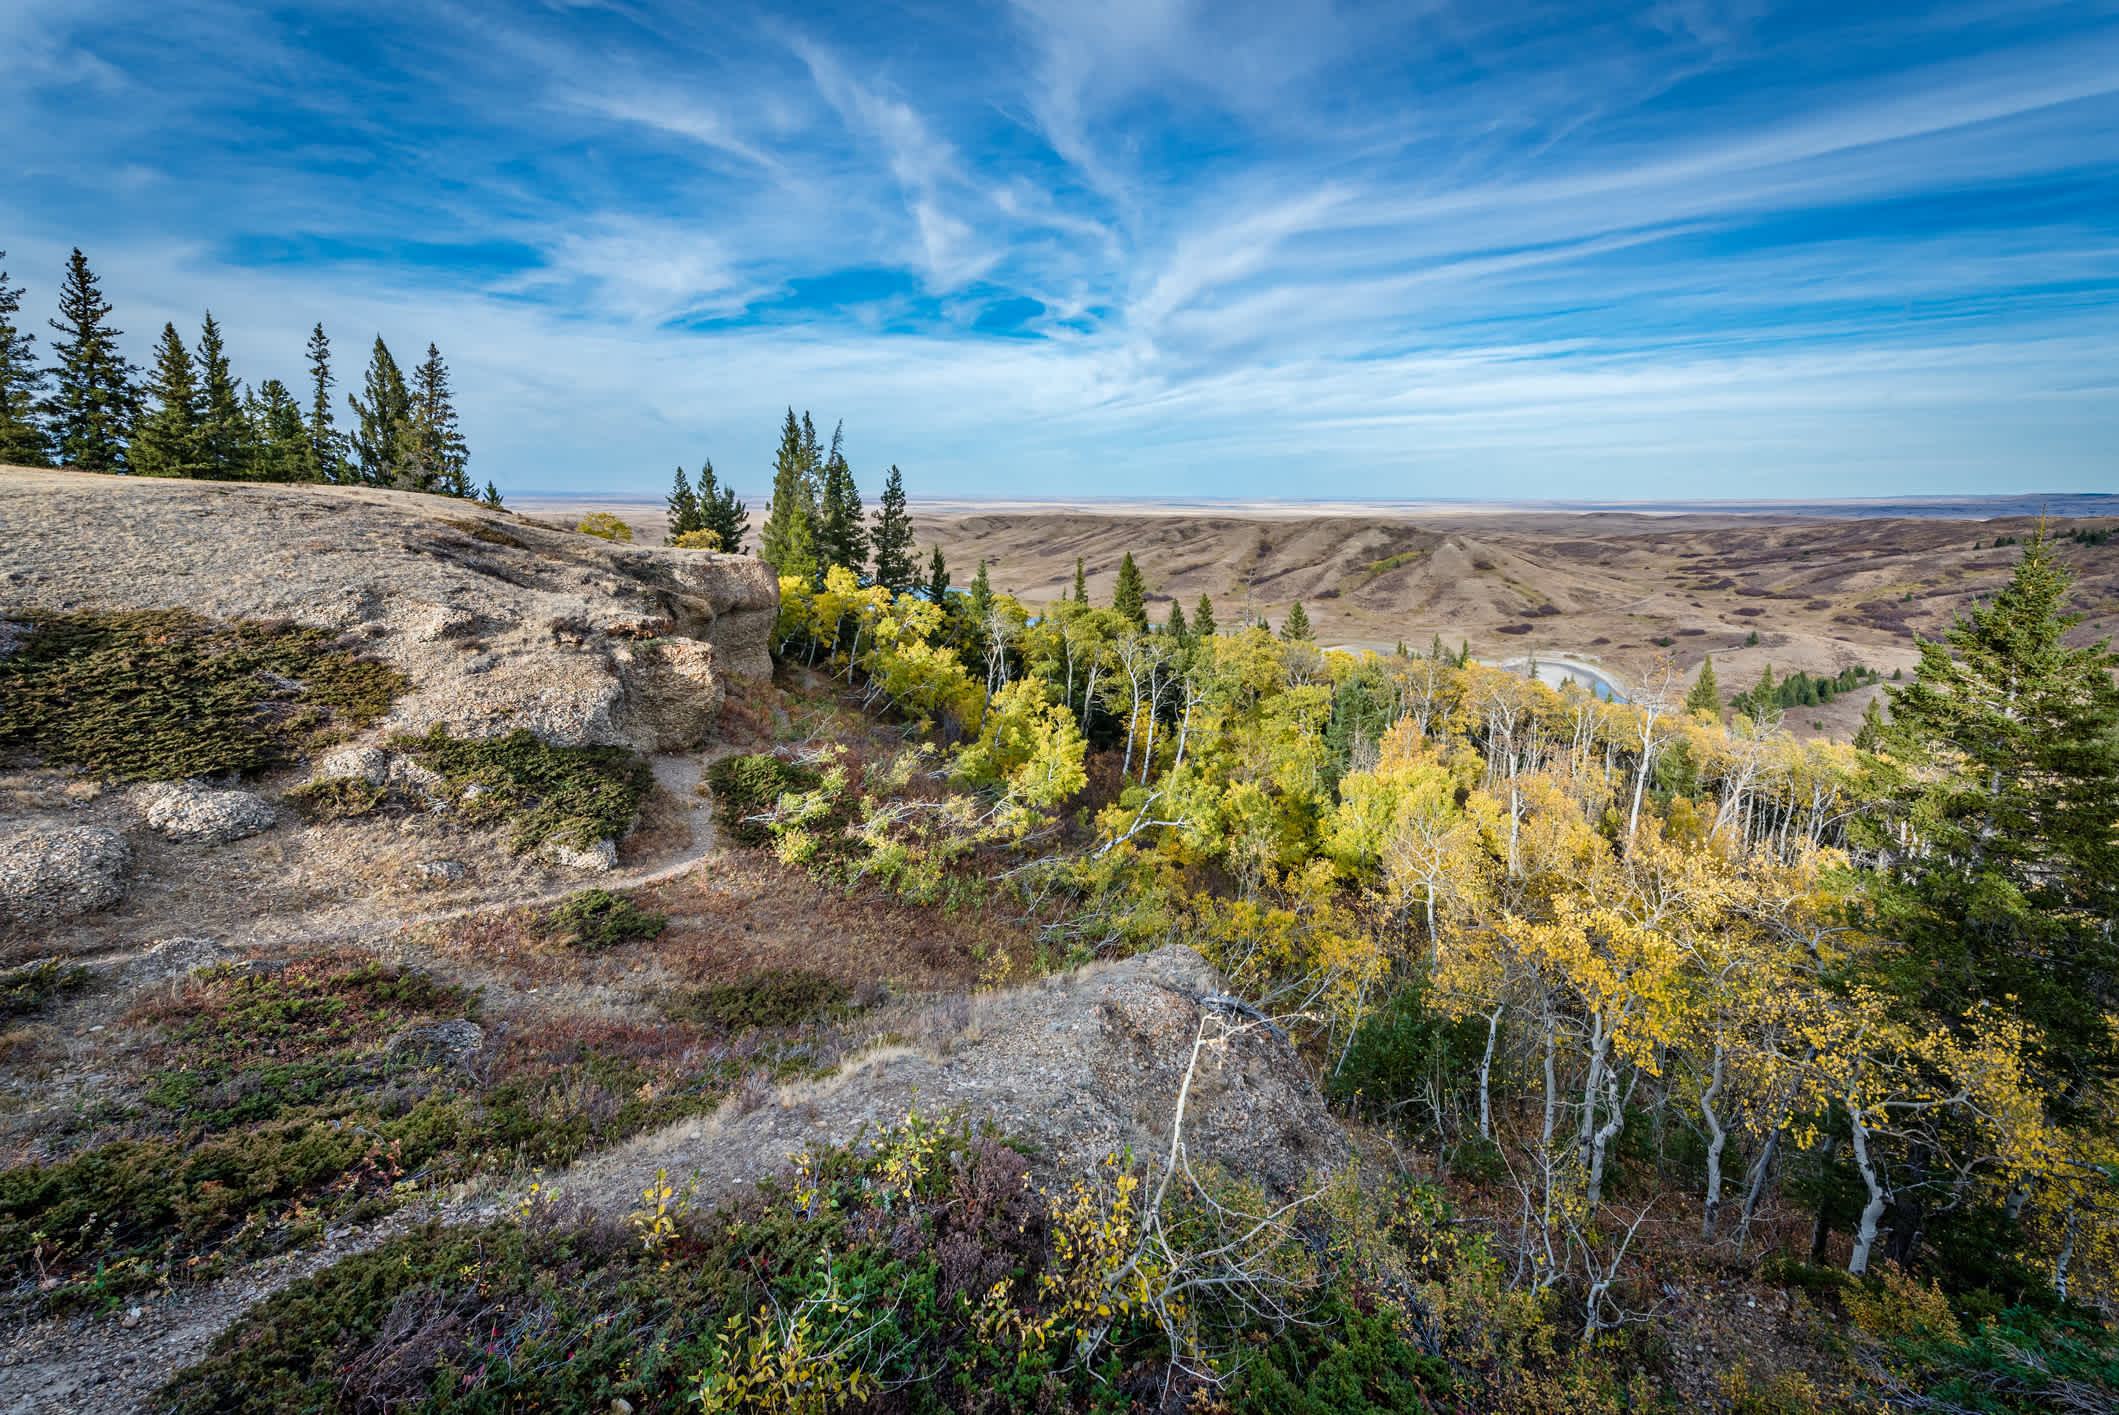 Vue de la vallée de la rivière Battle dans le parc provincial Cypress Hills, Saskatchewan, Canada.

